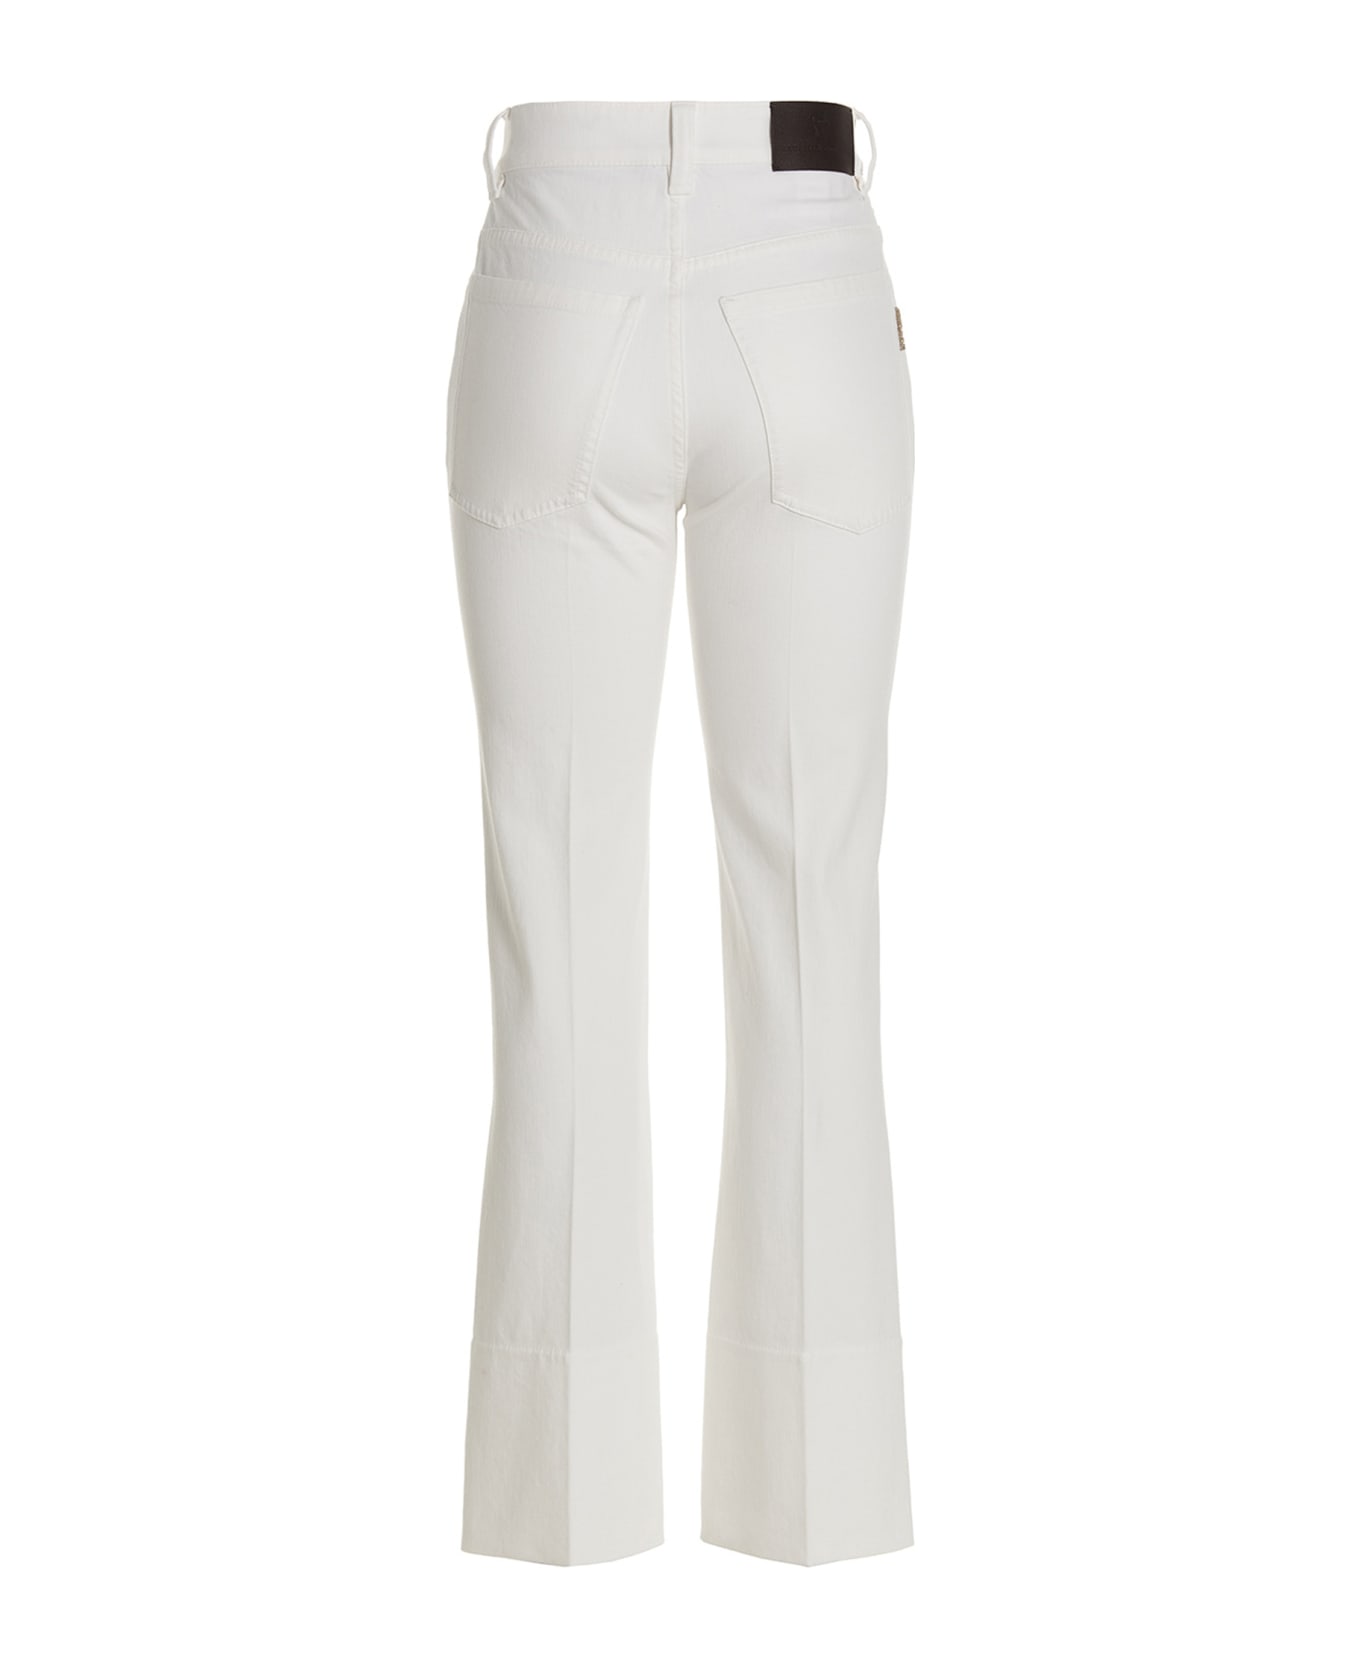 Brunello Cucinelli Cigarette-style Jeans - White